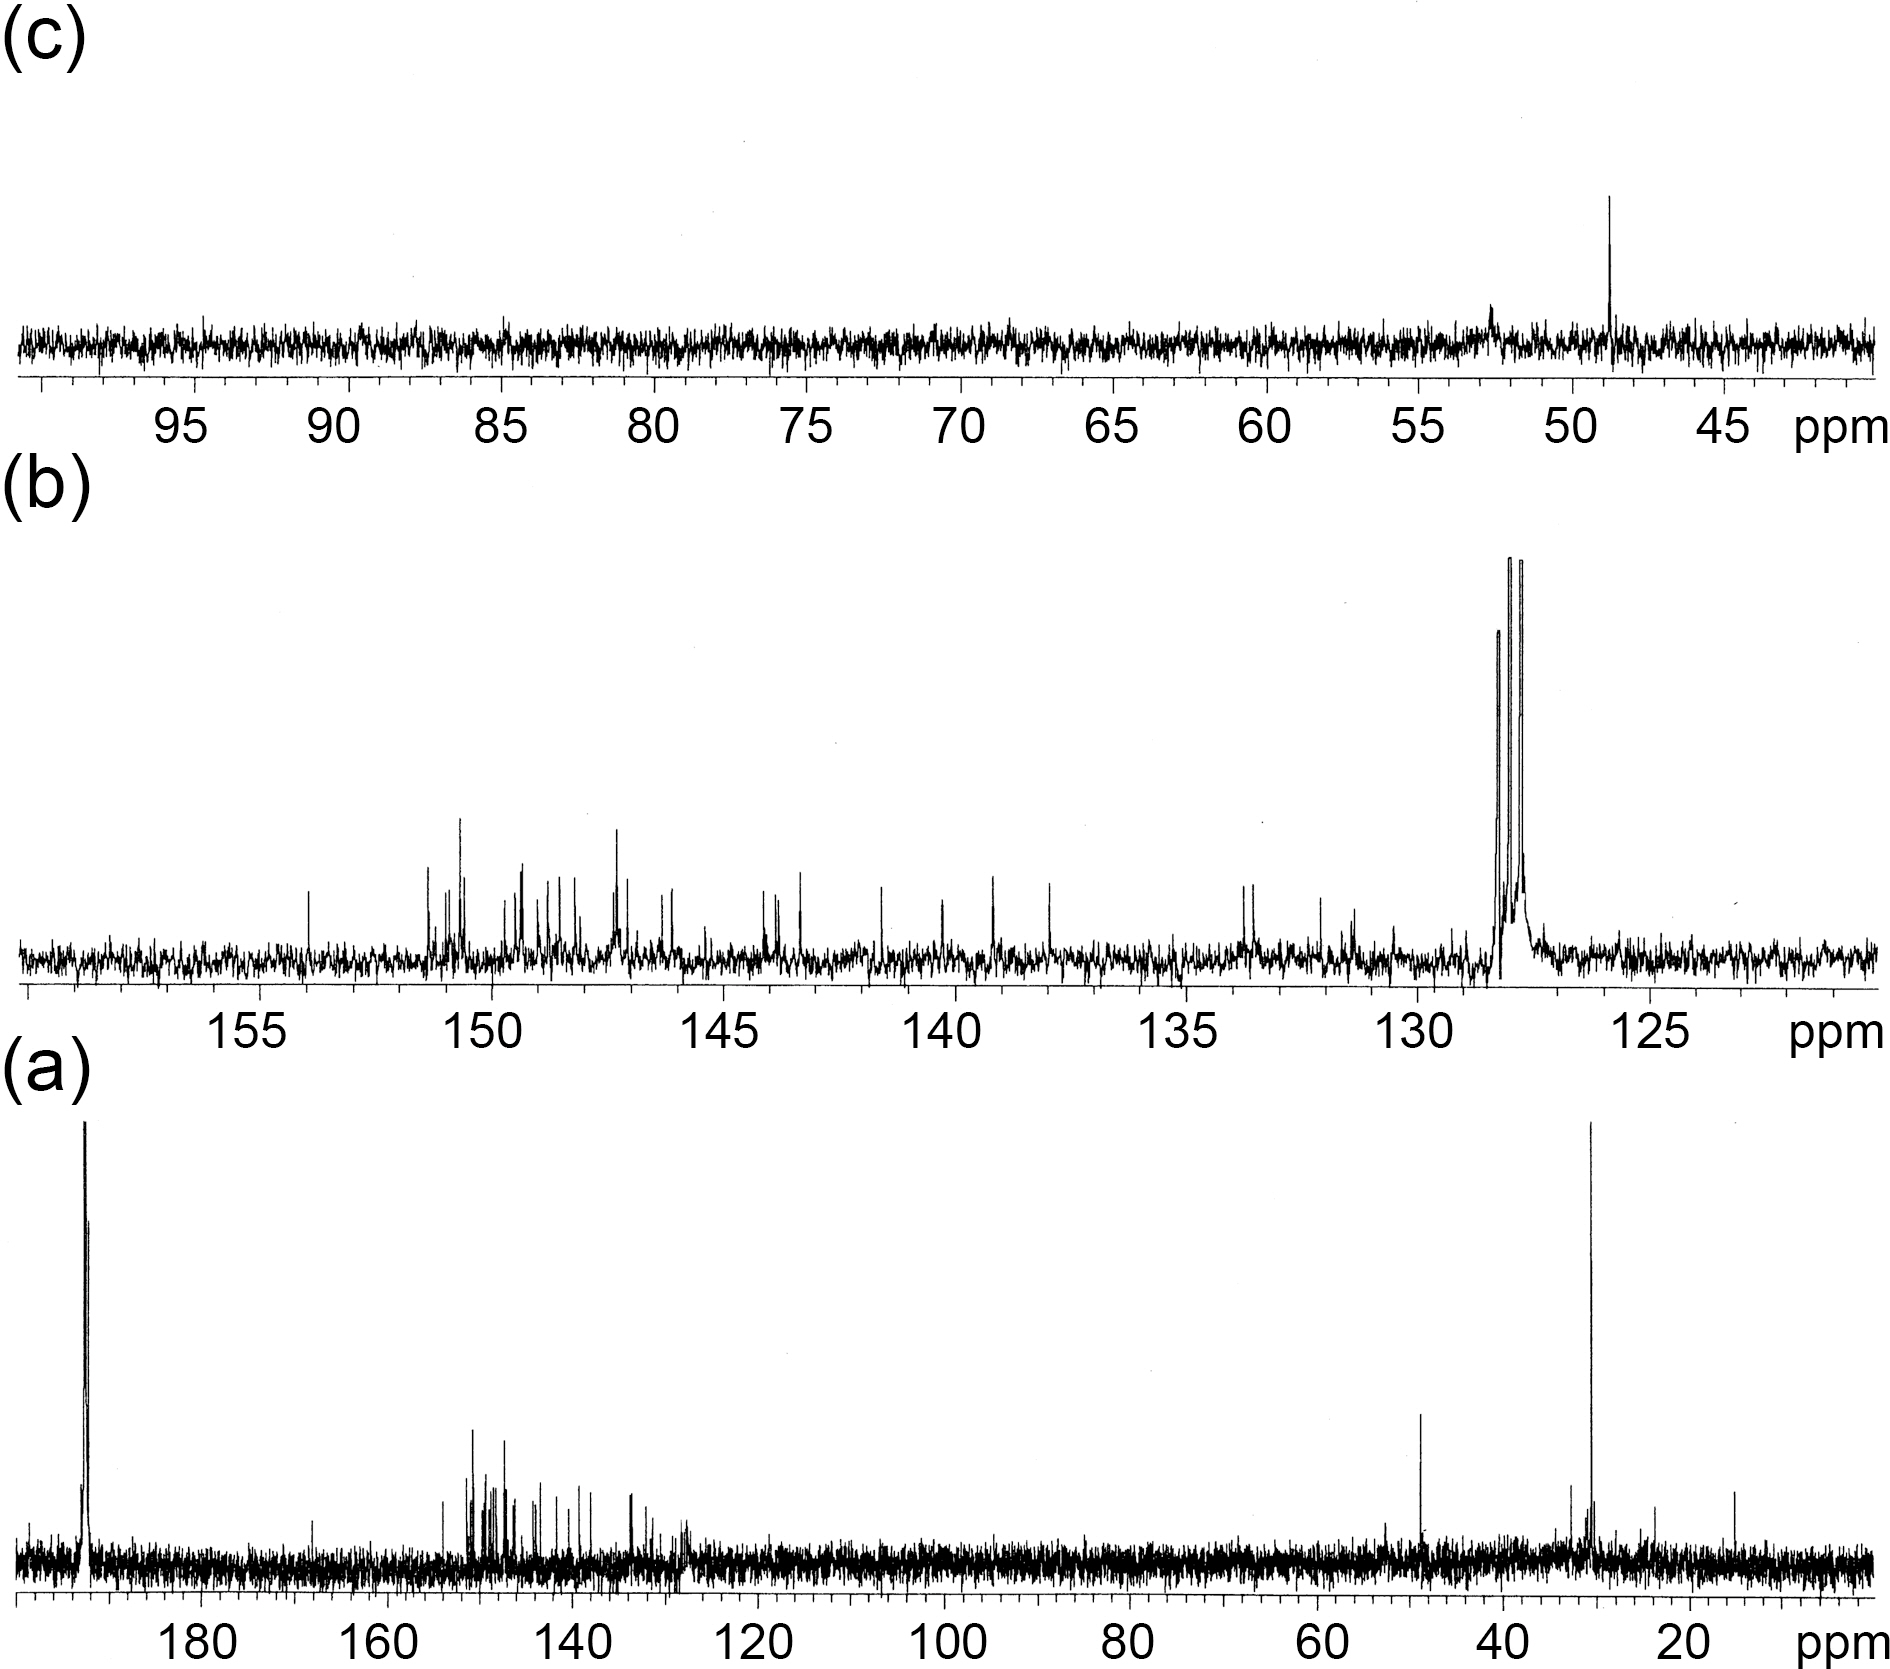 13C-NMR spectrum of 2 (a) in 200-0 ppm (b) in 160-120 ppm (c) in 100-40 ppm.